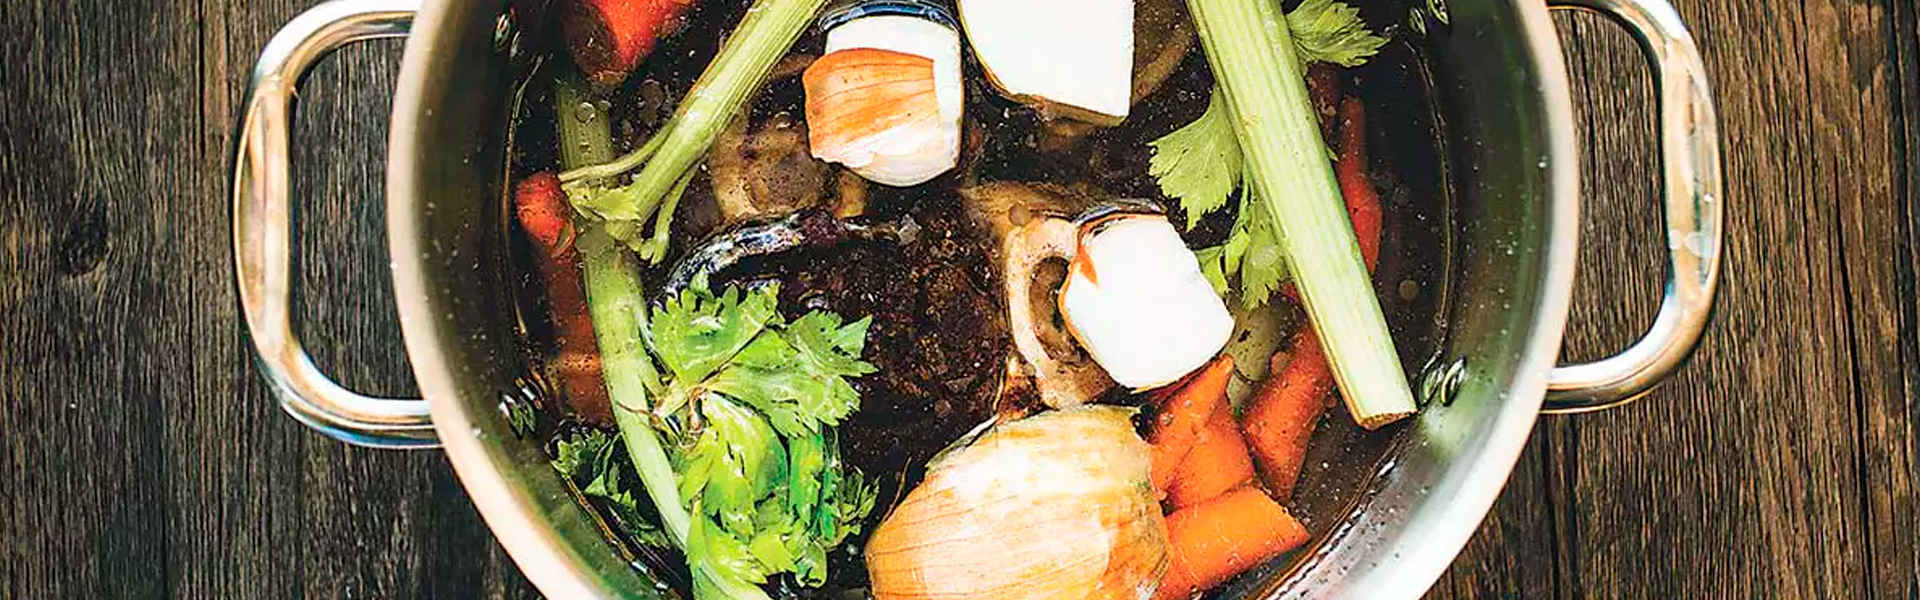 Caldo de legumes com restos de alimentos